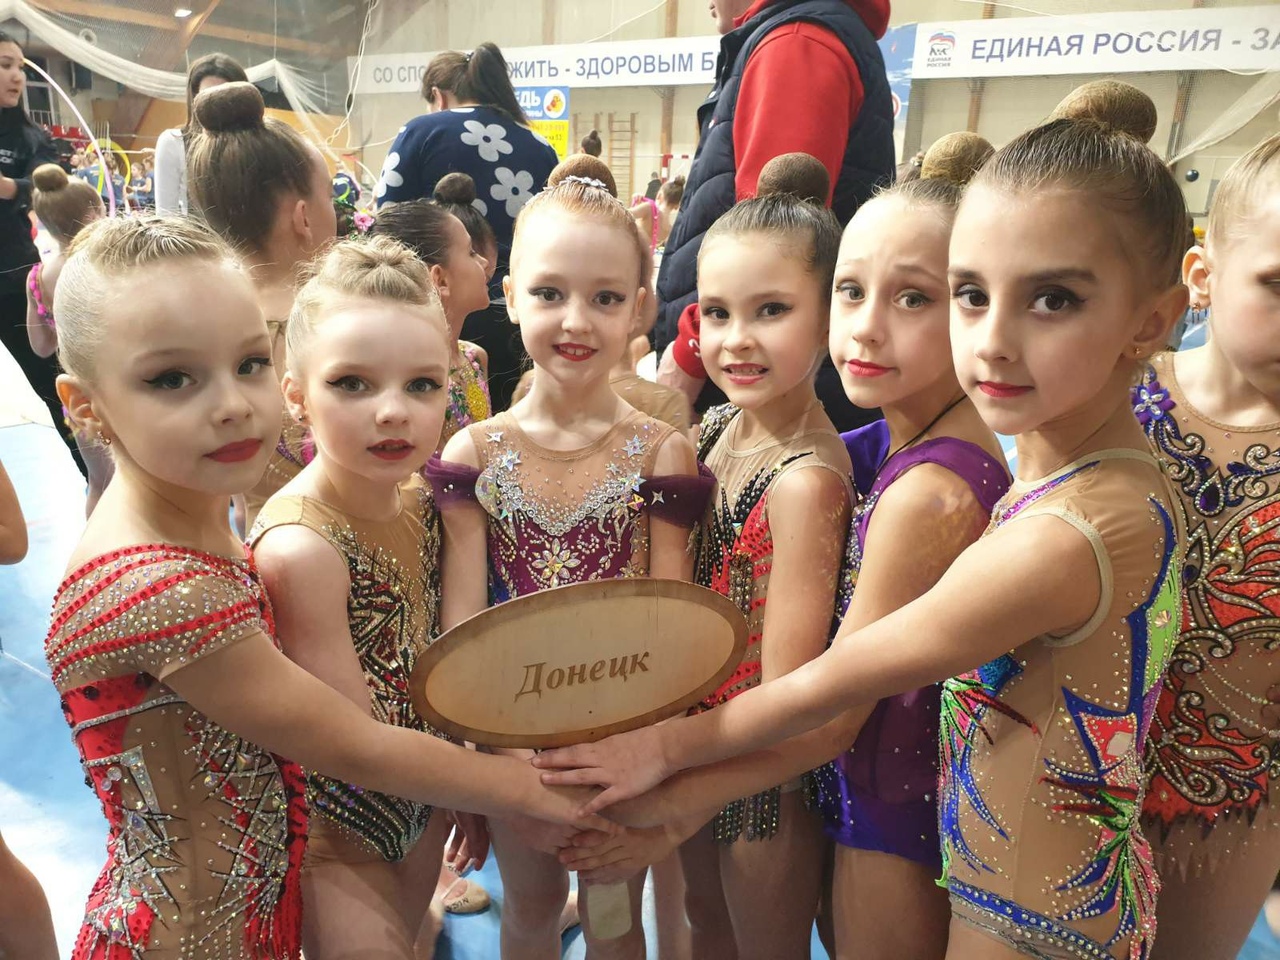 Спортсменки Республики завоевали 8 золотых медалей на турнире по художественной гимнастике в России